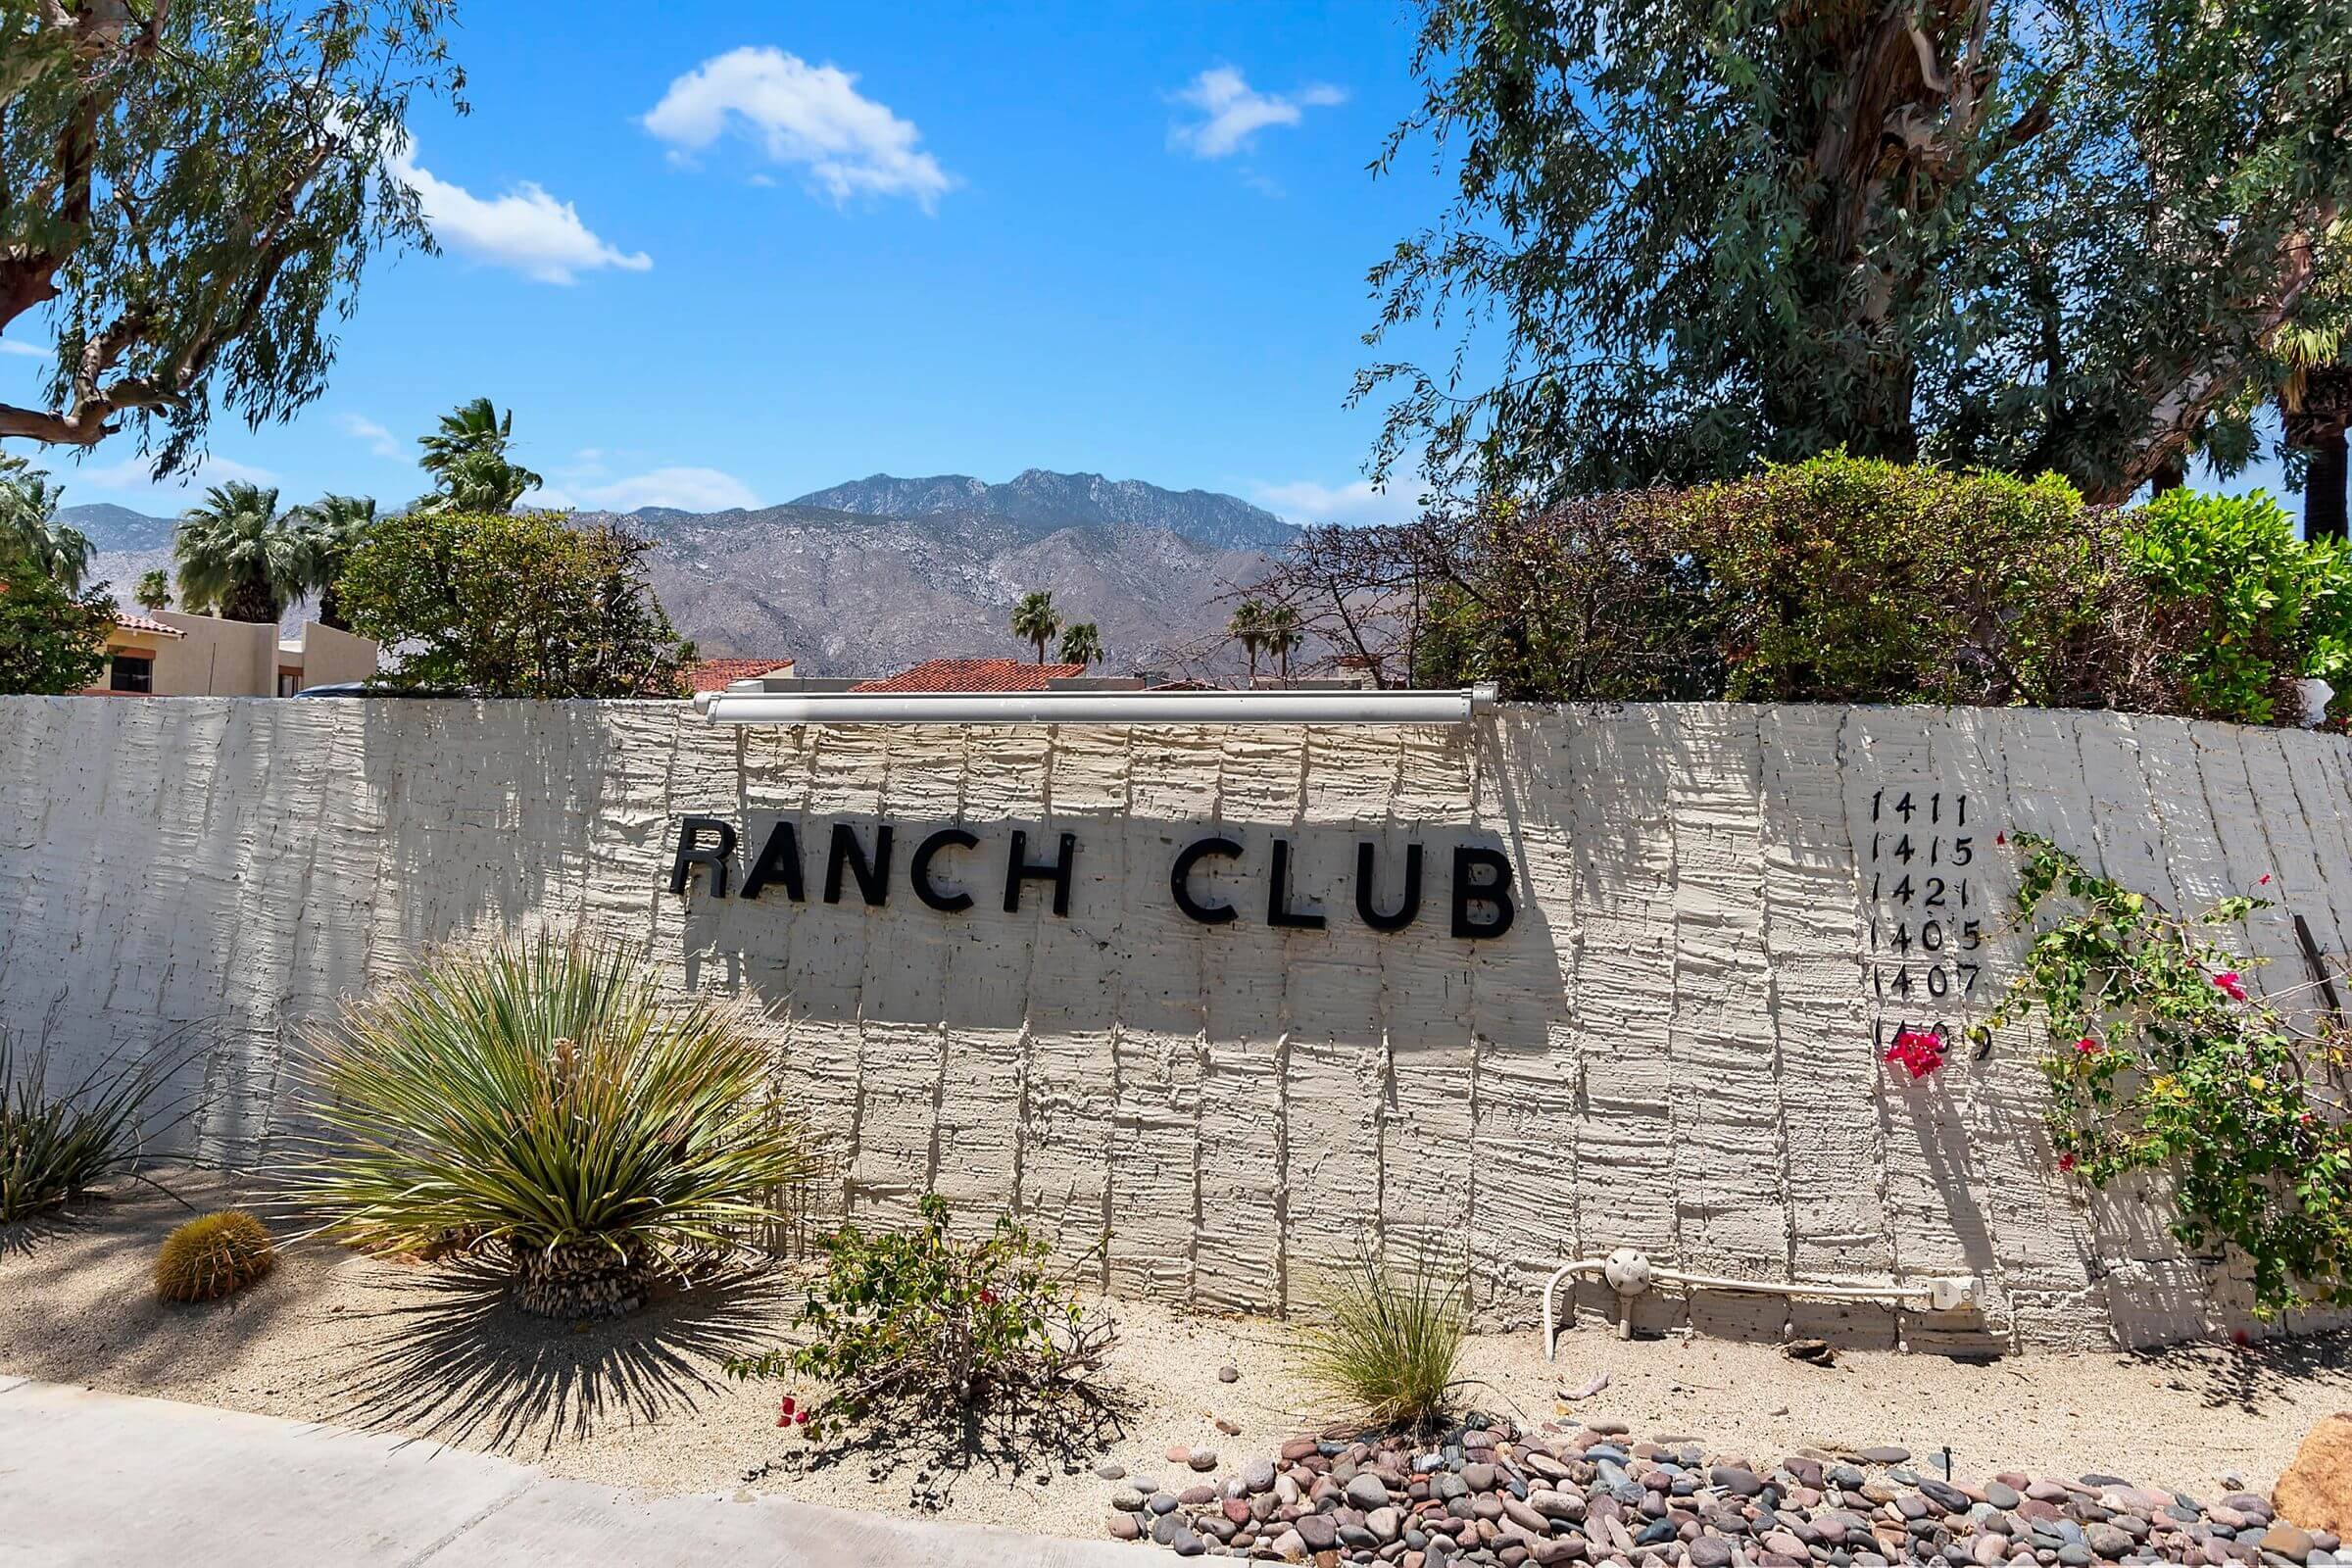 Ranch Club Estados Palm Springs 92262